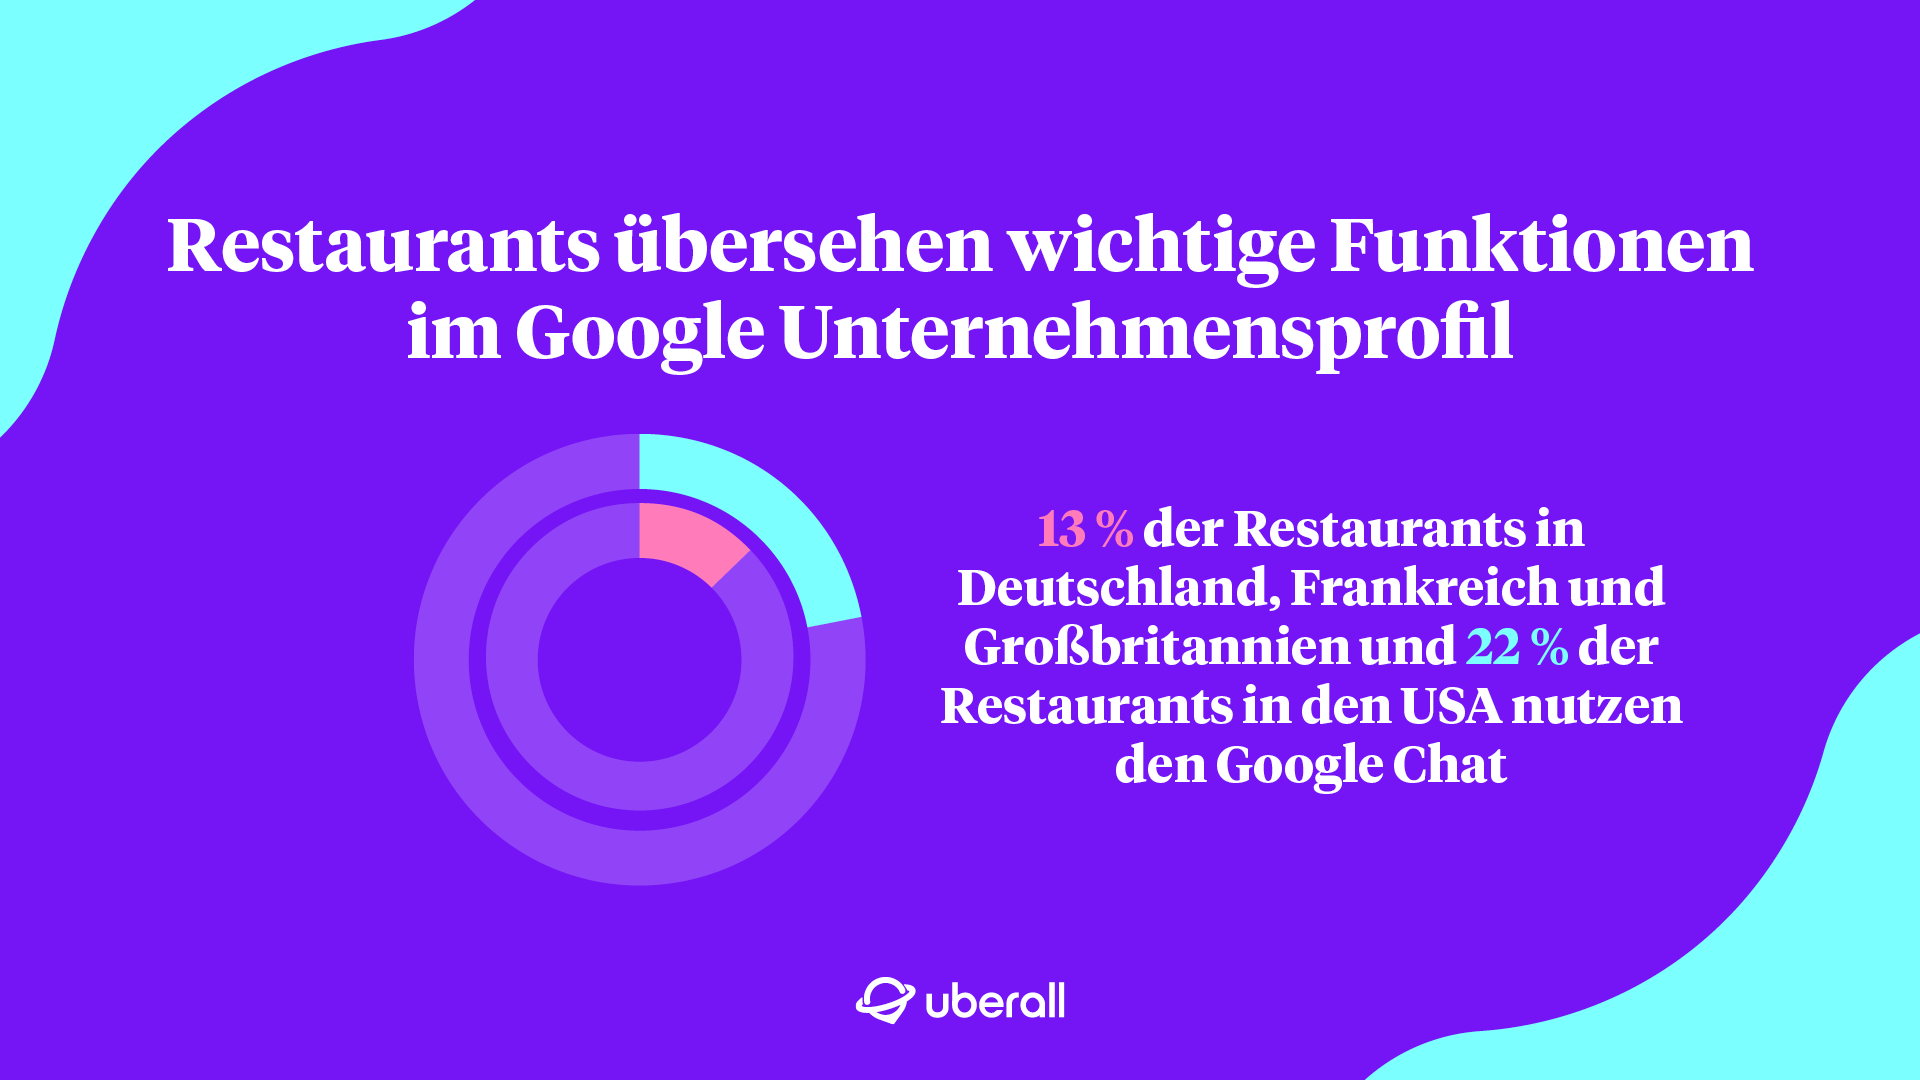 Restaurants übersehen wichtige Funktionen im Google-Unternehmensprofil